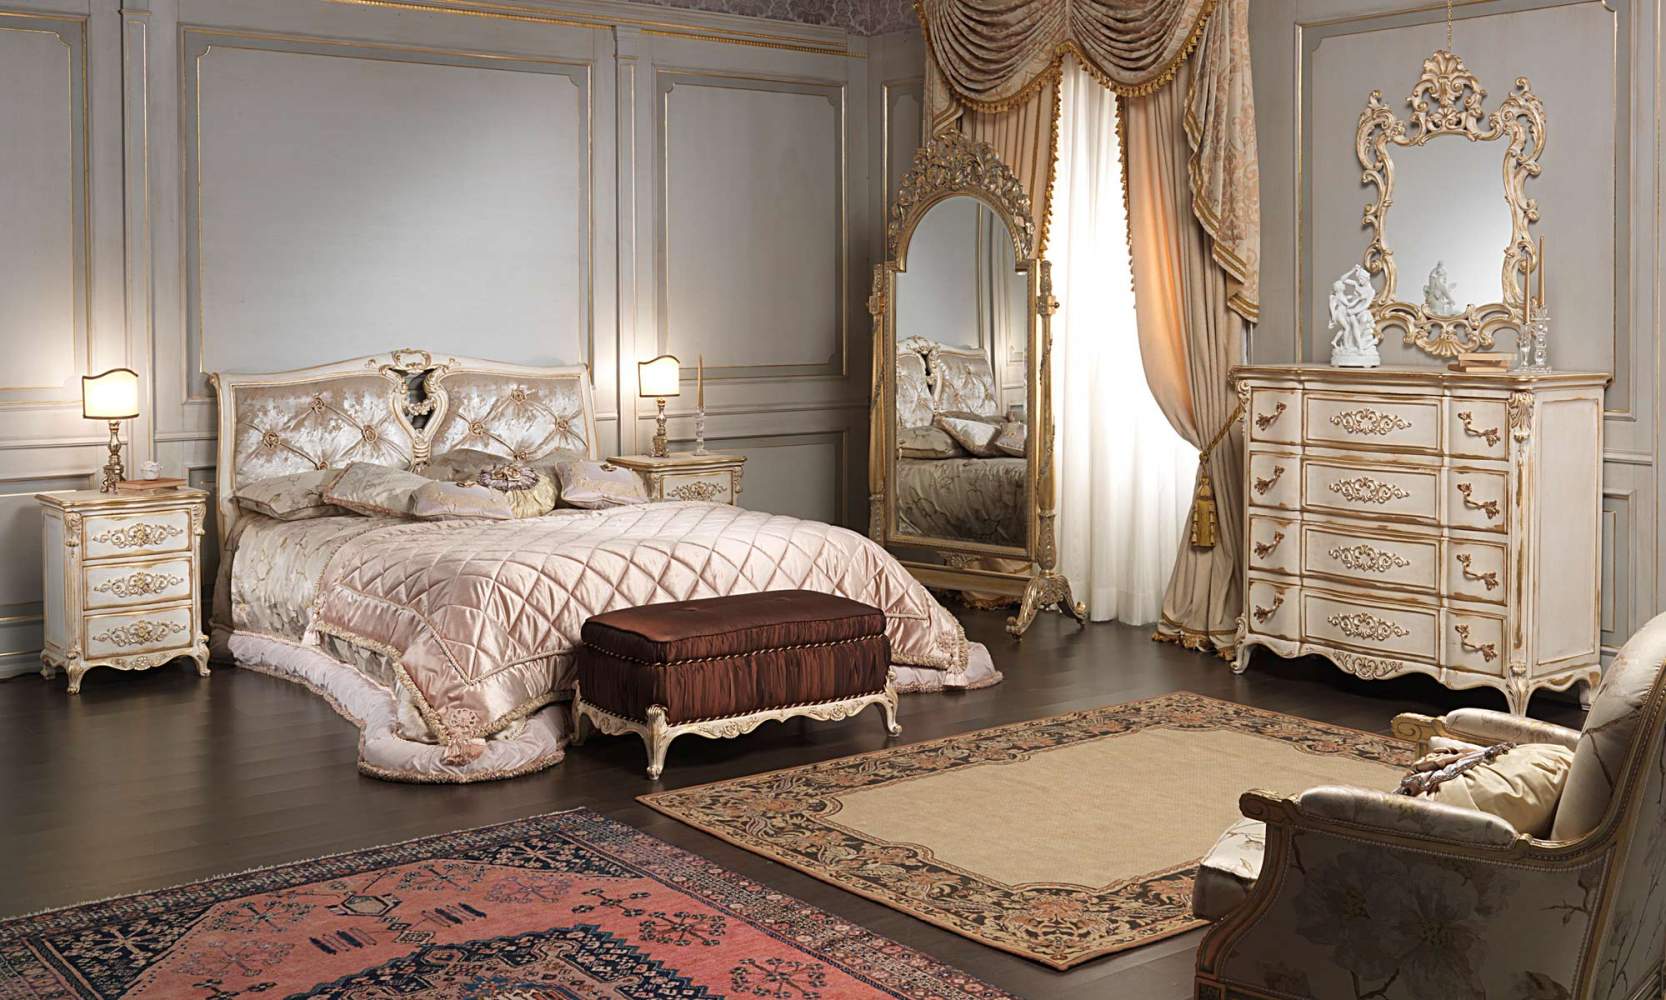 Camera da letto classica in stile Luigi XVI, letto, panca imbottita, comodino, comò, specchiera e specchiera su ruote